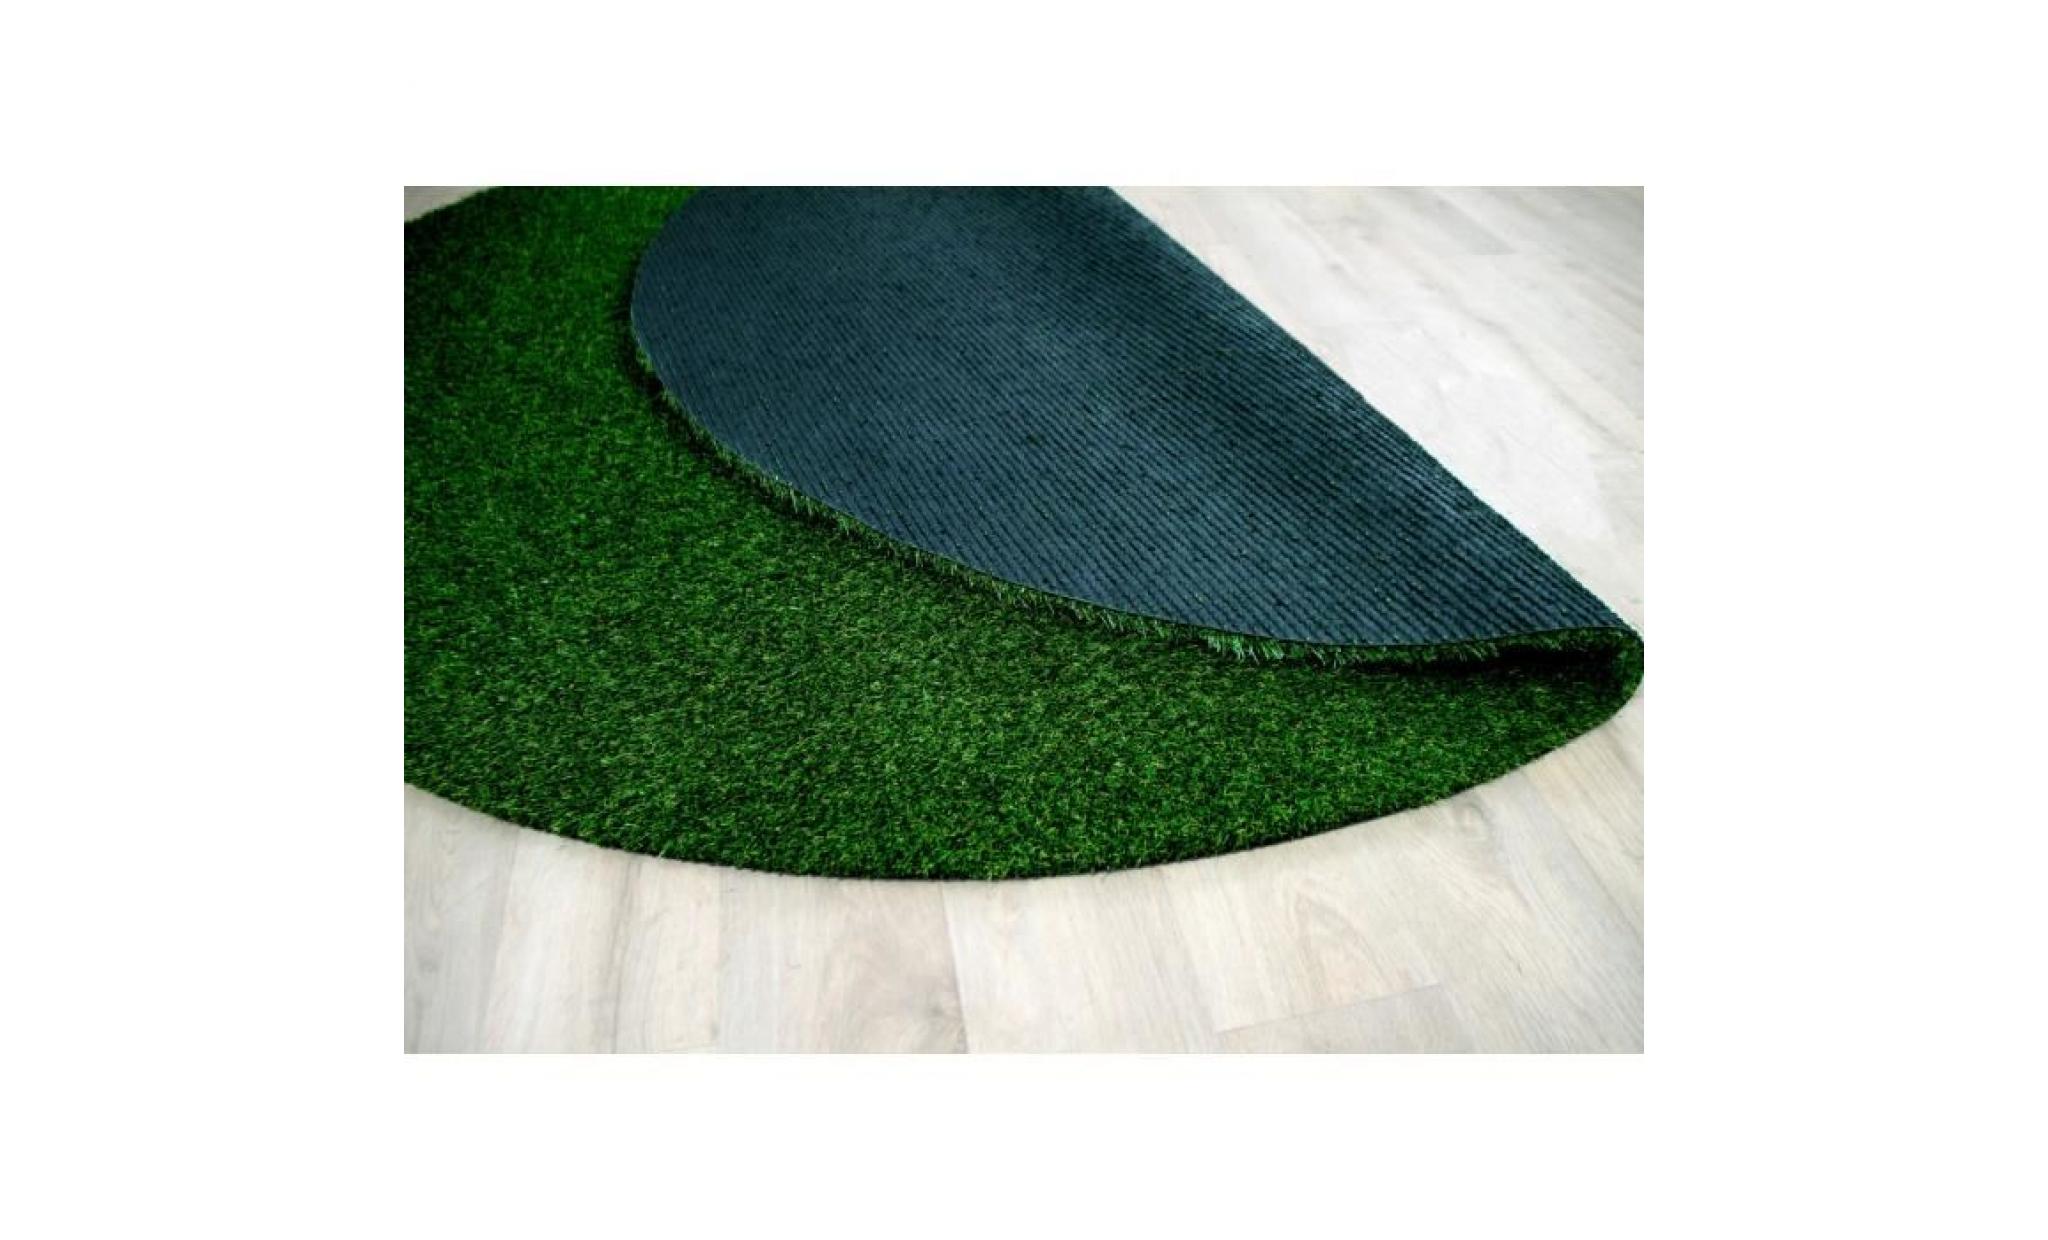 chelsea   tapis type luxe gazon artificiel rond – pour jardin, terrasse, balcon   vert   [200 cm rond] pas cher